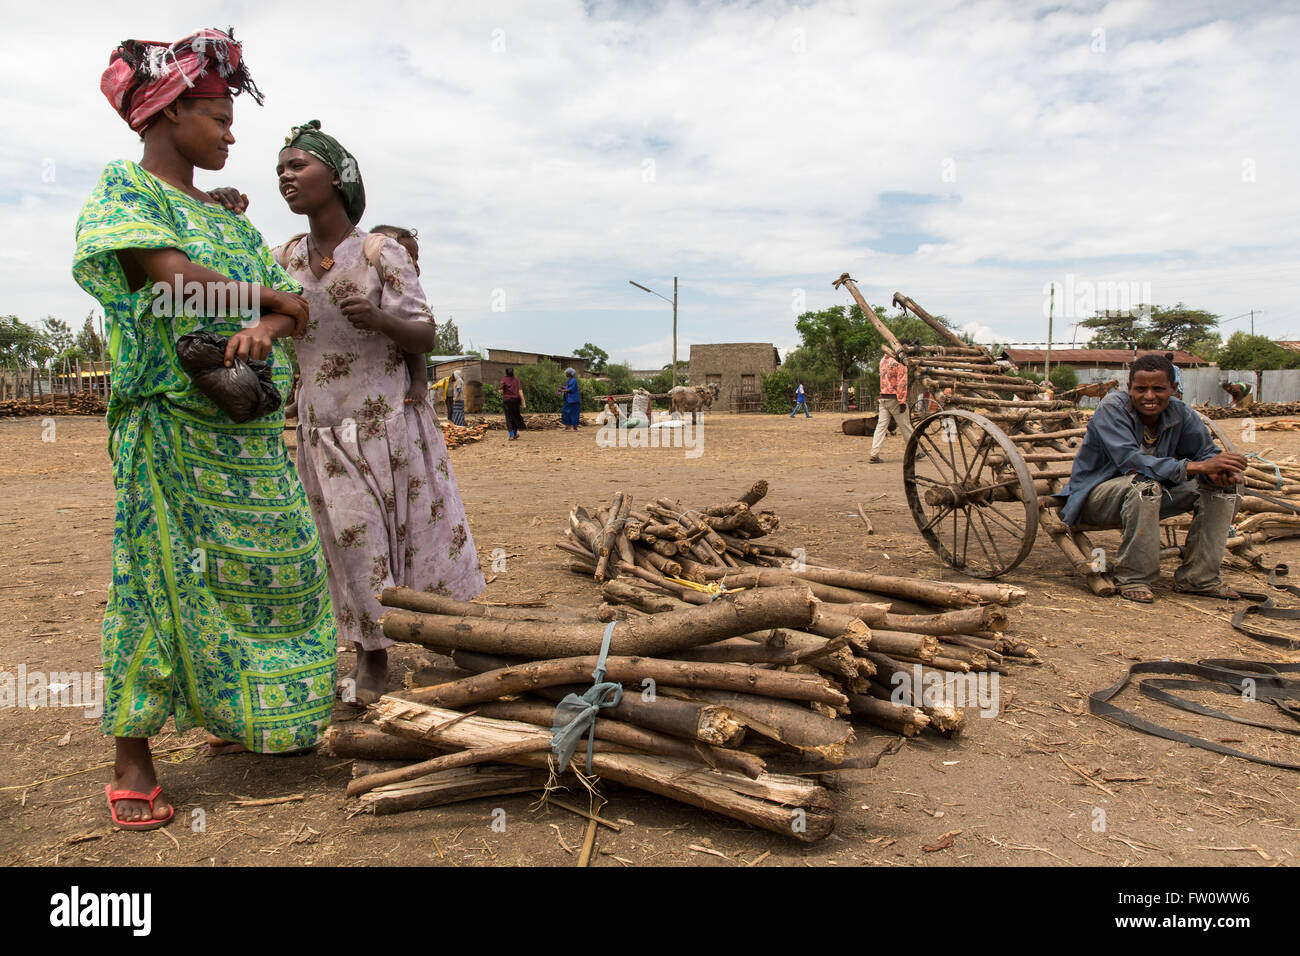 Meki Town Market, l'Éthiopie, Octobre 2013 : Les femmes qui cherchent à acheter du bois de chauffage sur le marché, mais le prix de ces ensembles est trop élevé. Banque D'Images